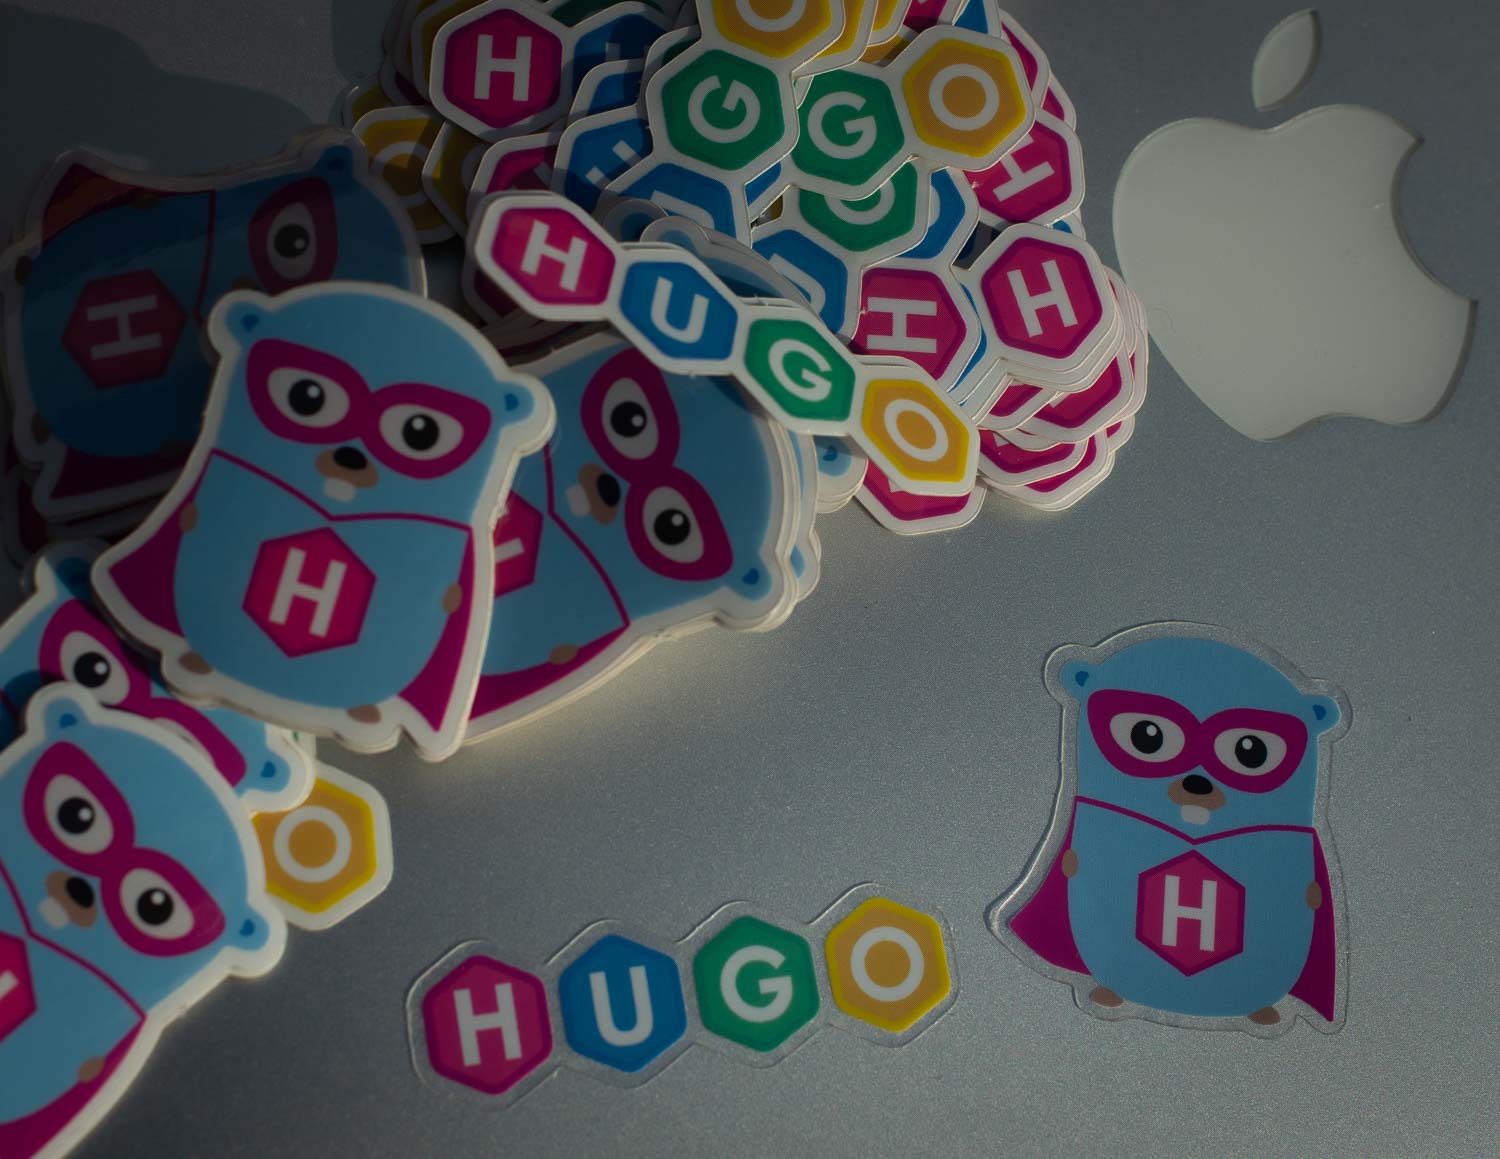 Hugo stickers